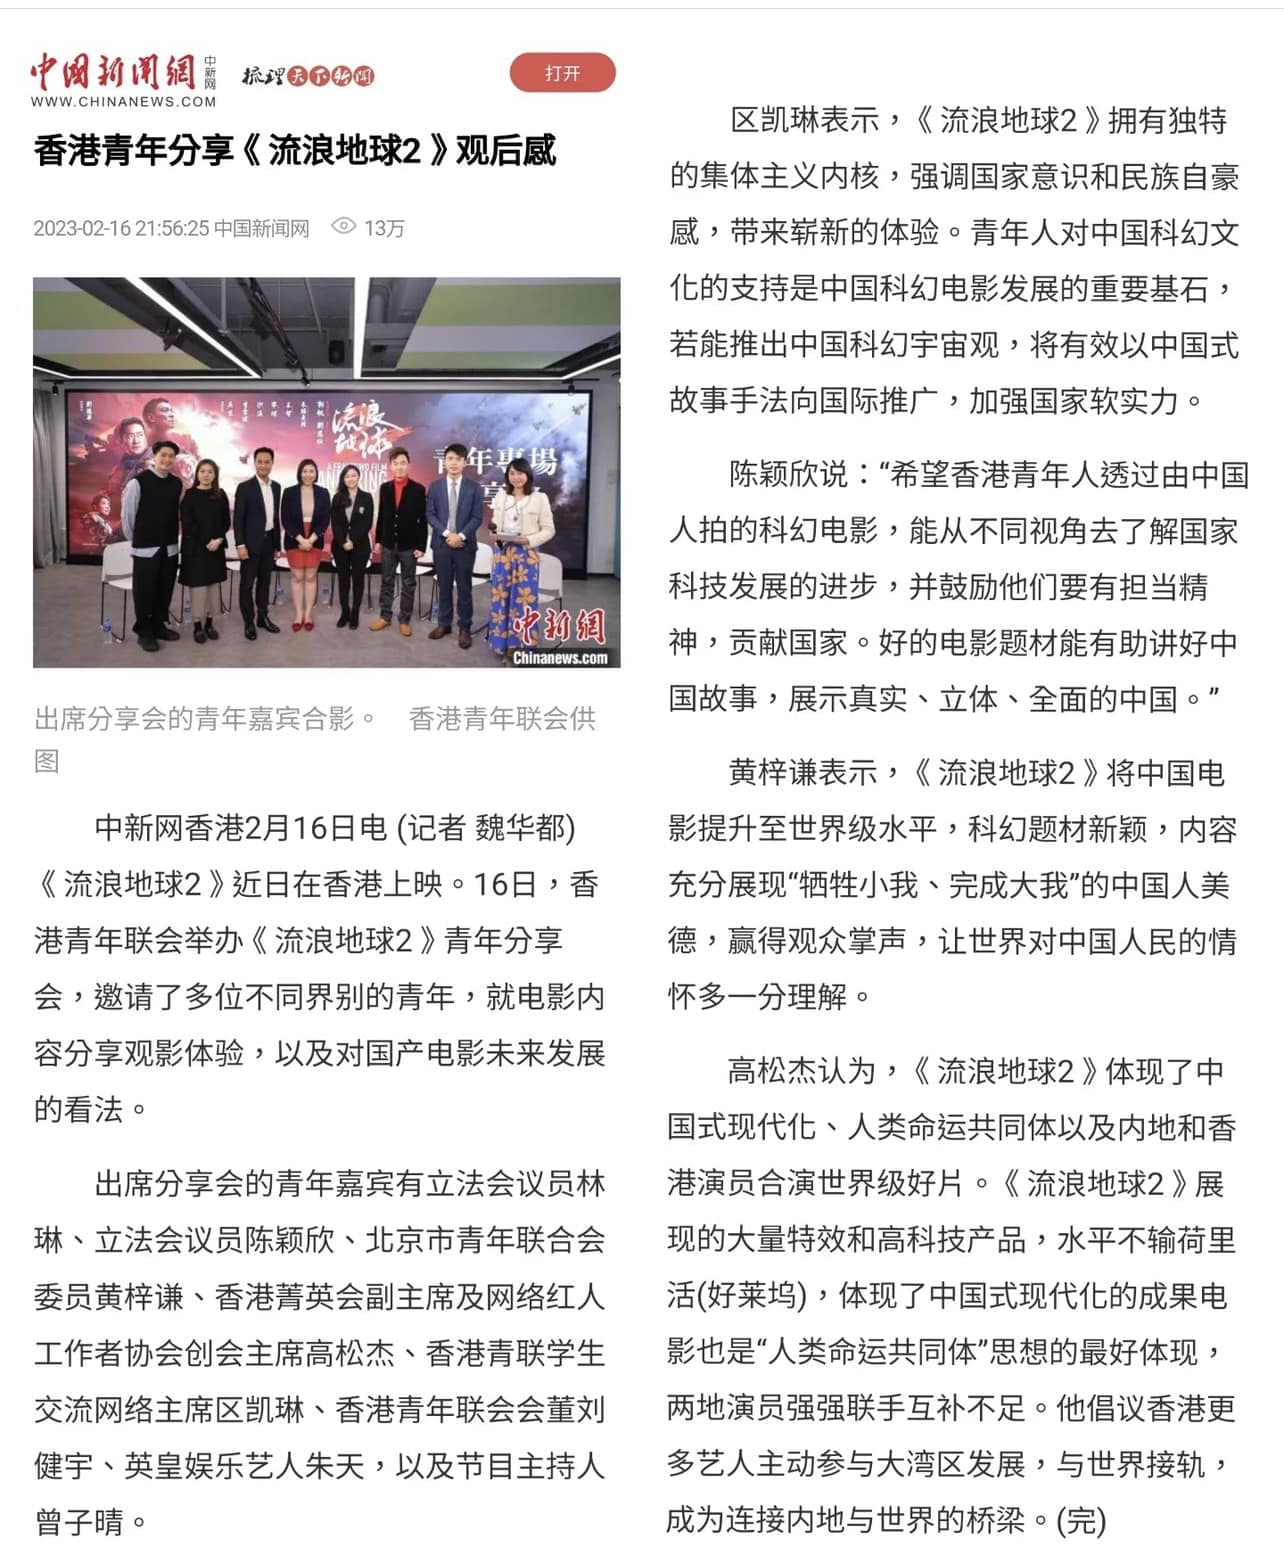 VIVIAN 曾子晴 司儀傳媒報導: 中國新聞網：港青觀影《流浪地球2》：展示真實立體全面中國